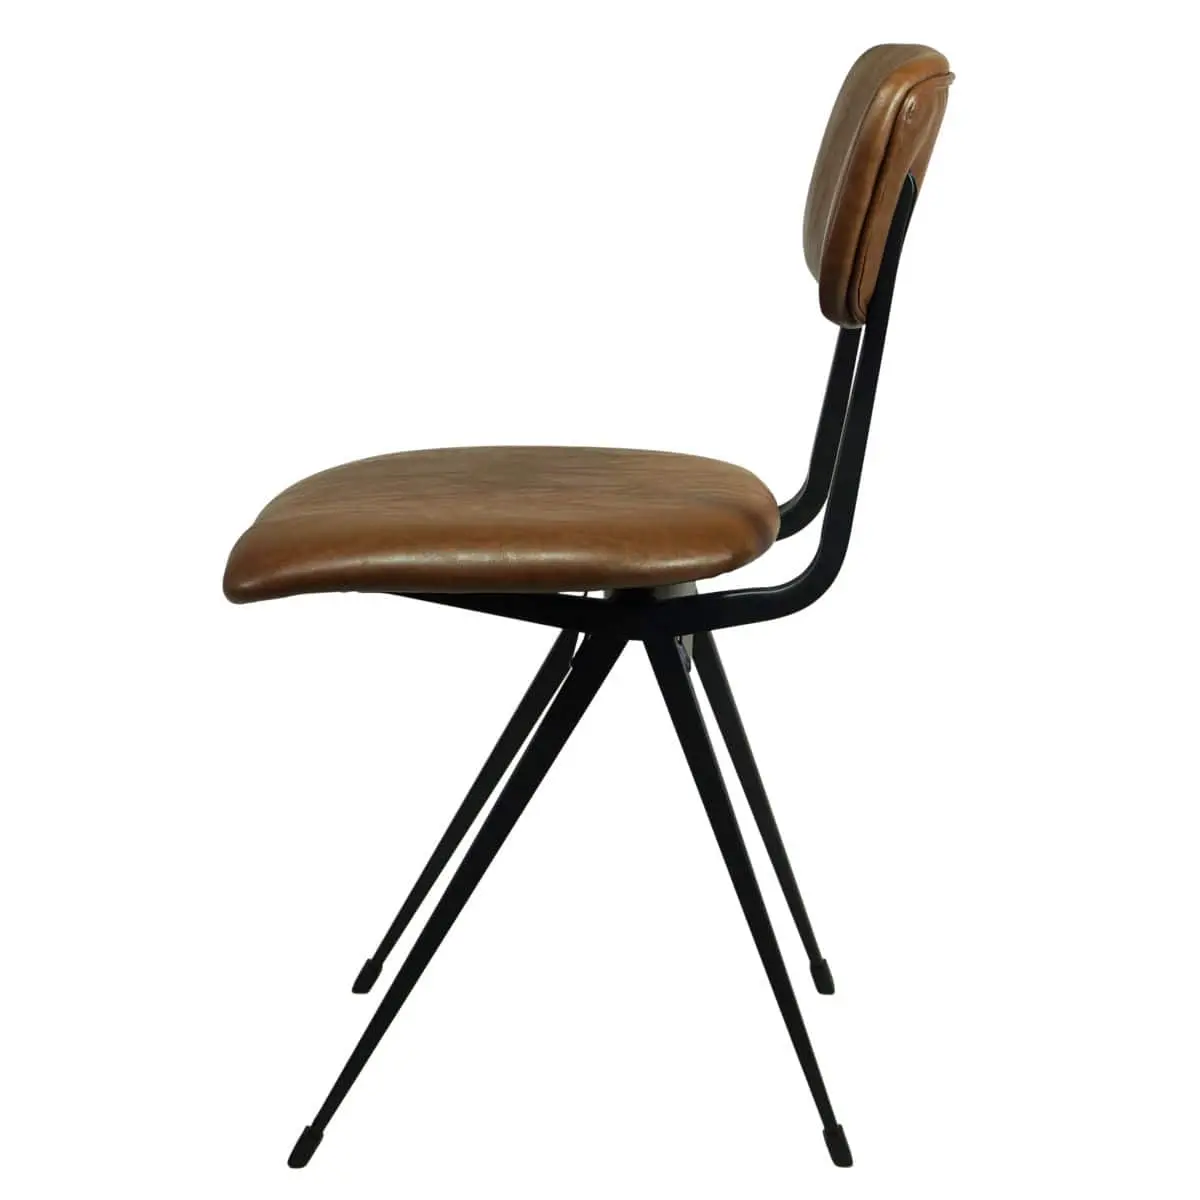 Stuhl, Esszimmerstuhl, Gastrostuhl für Cafes, Tagesbars und Restaurant, zeitloses Design nach Friso Kremmer, braun gepolstert, stabil